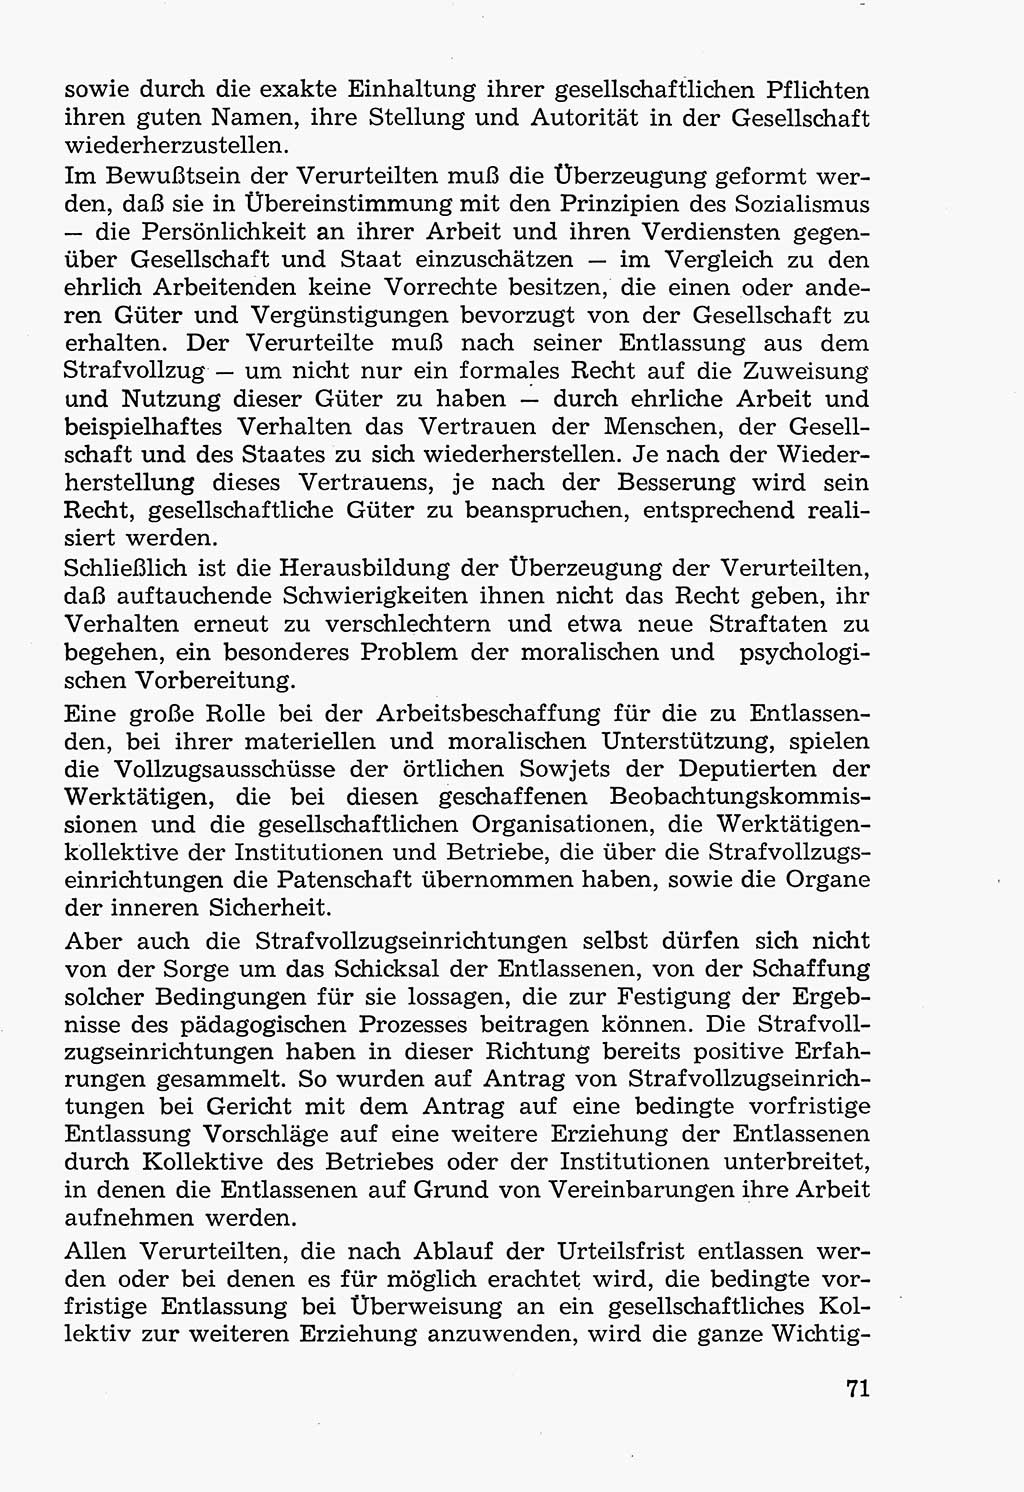 Lehrbuch der Strafvollzugspädagogik [Deutsche Demokratische Republik (DDR)] 1969, Seite 71 (Lb. SV-Pd. DDR 1969, S. 71)